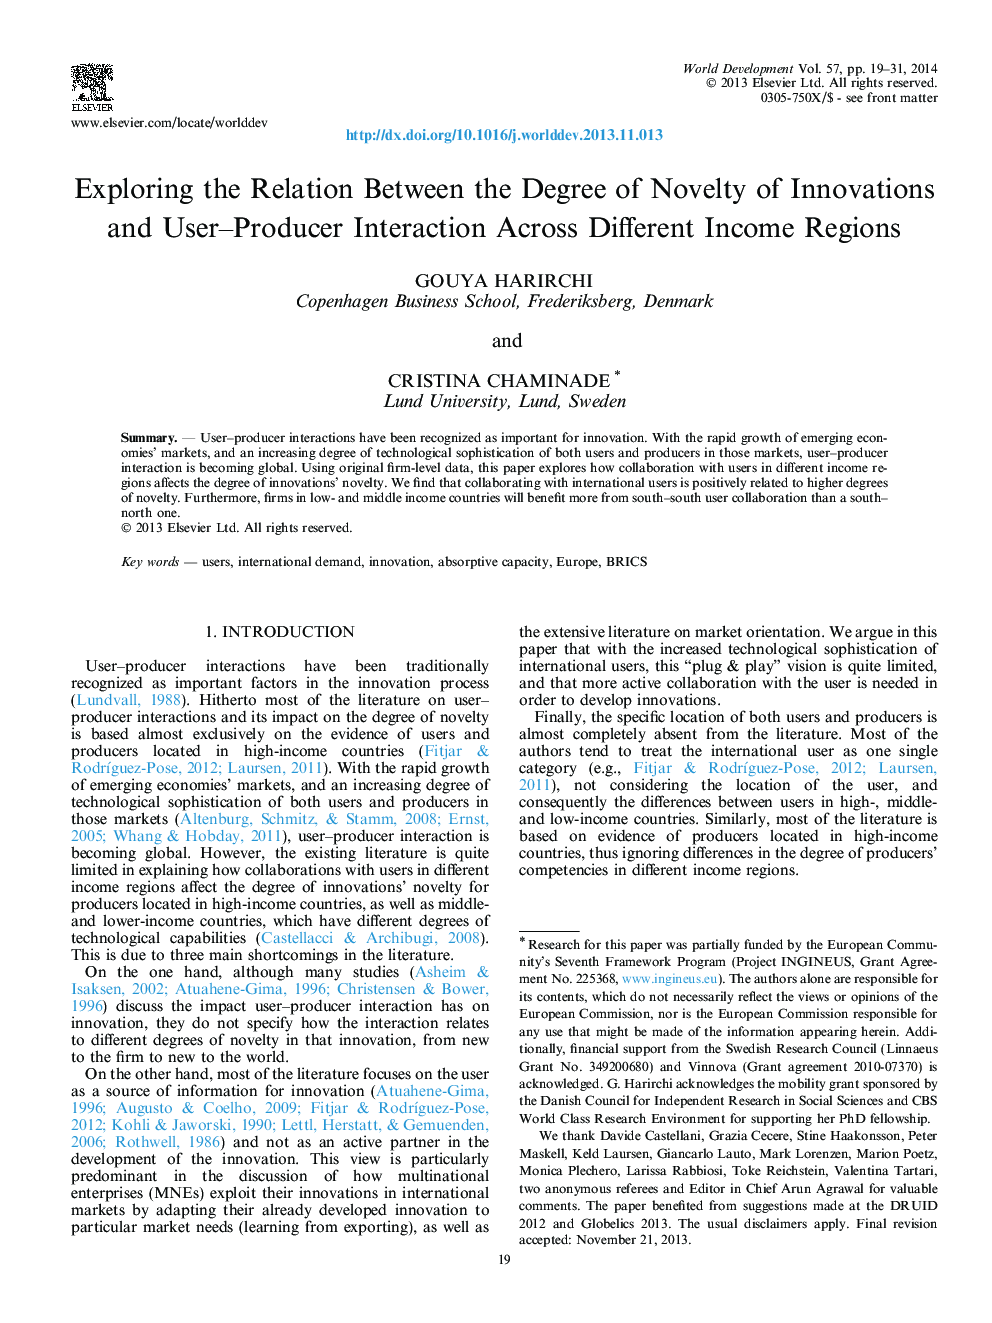 بررسی رابطه بین درجه نوآوری و تعامل سازنده اعتماد بین مناطق مختلف درآمد 